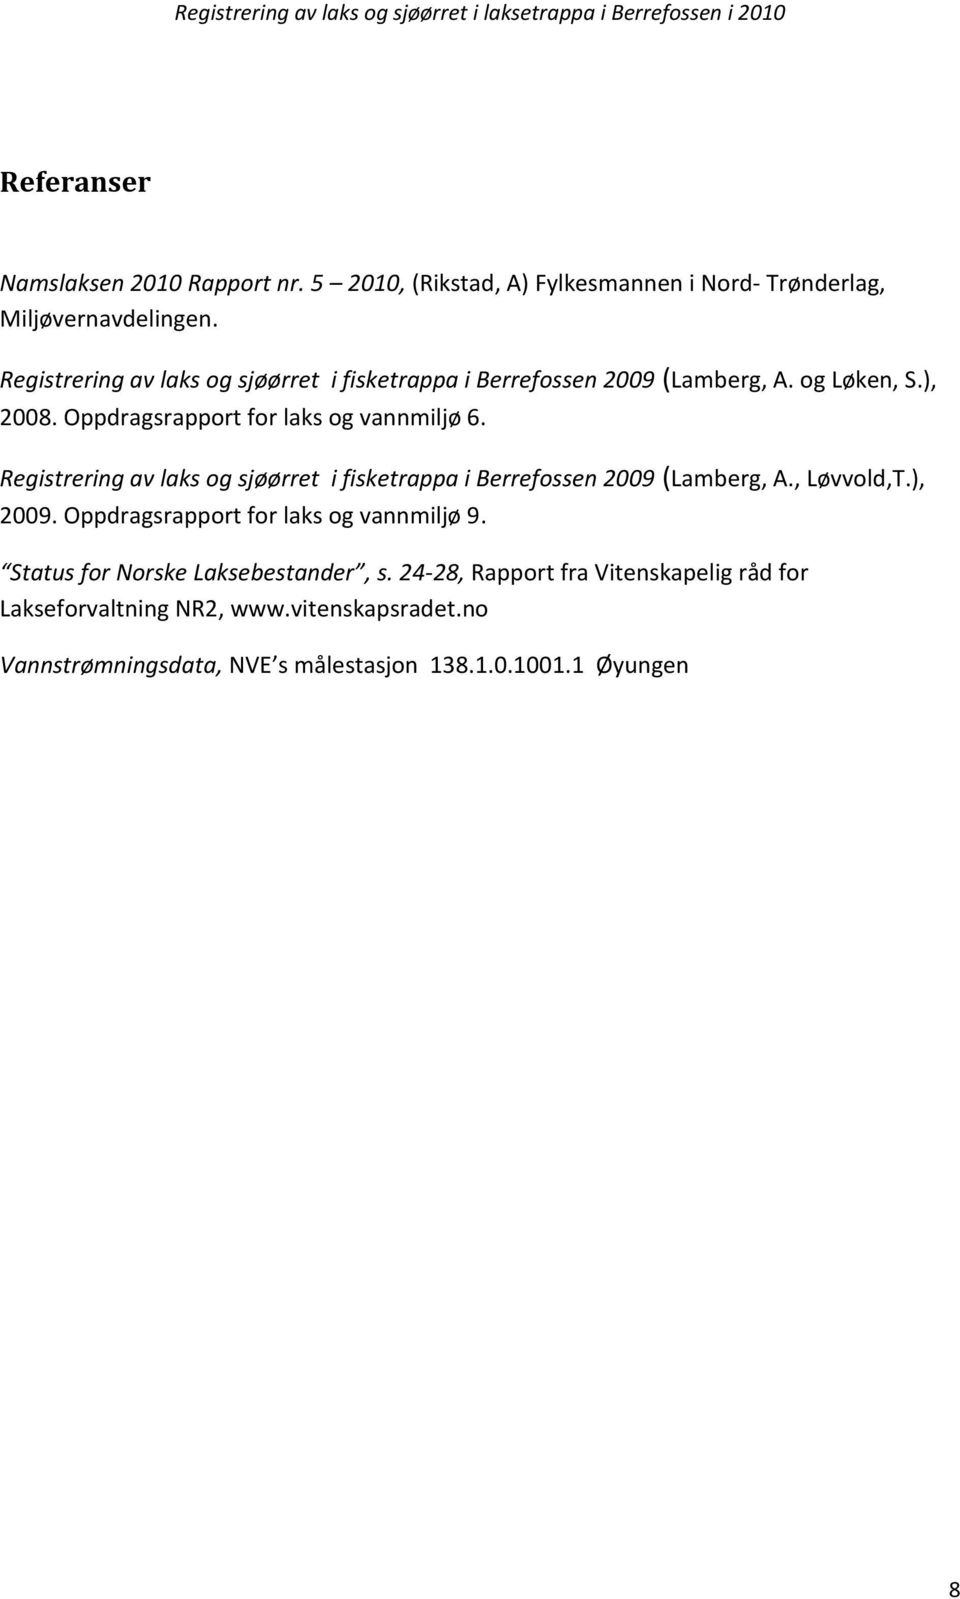 Registrering av laks og sjøørret i fisketrappa i Berrefossen 2009 (Lamberg, A., Løvvold,T.), 2009. Oppdragsrapport for laks og vannmiljø 9.